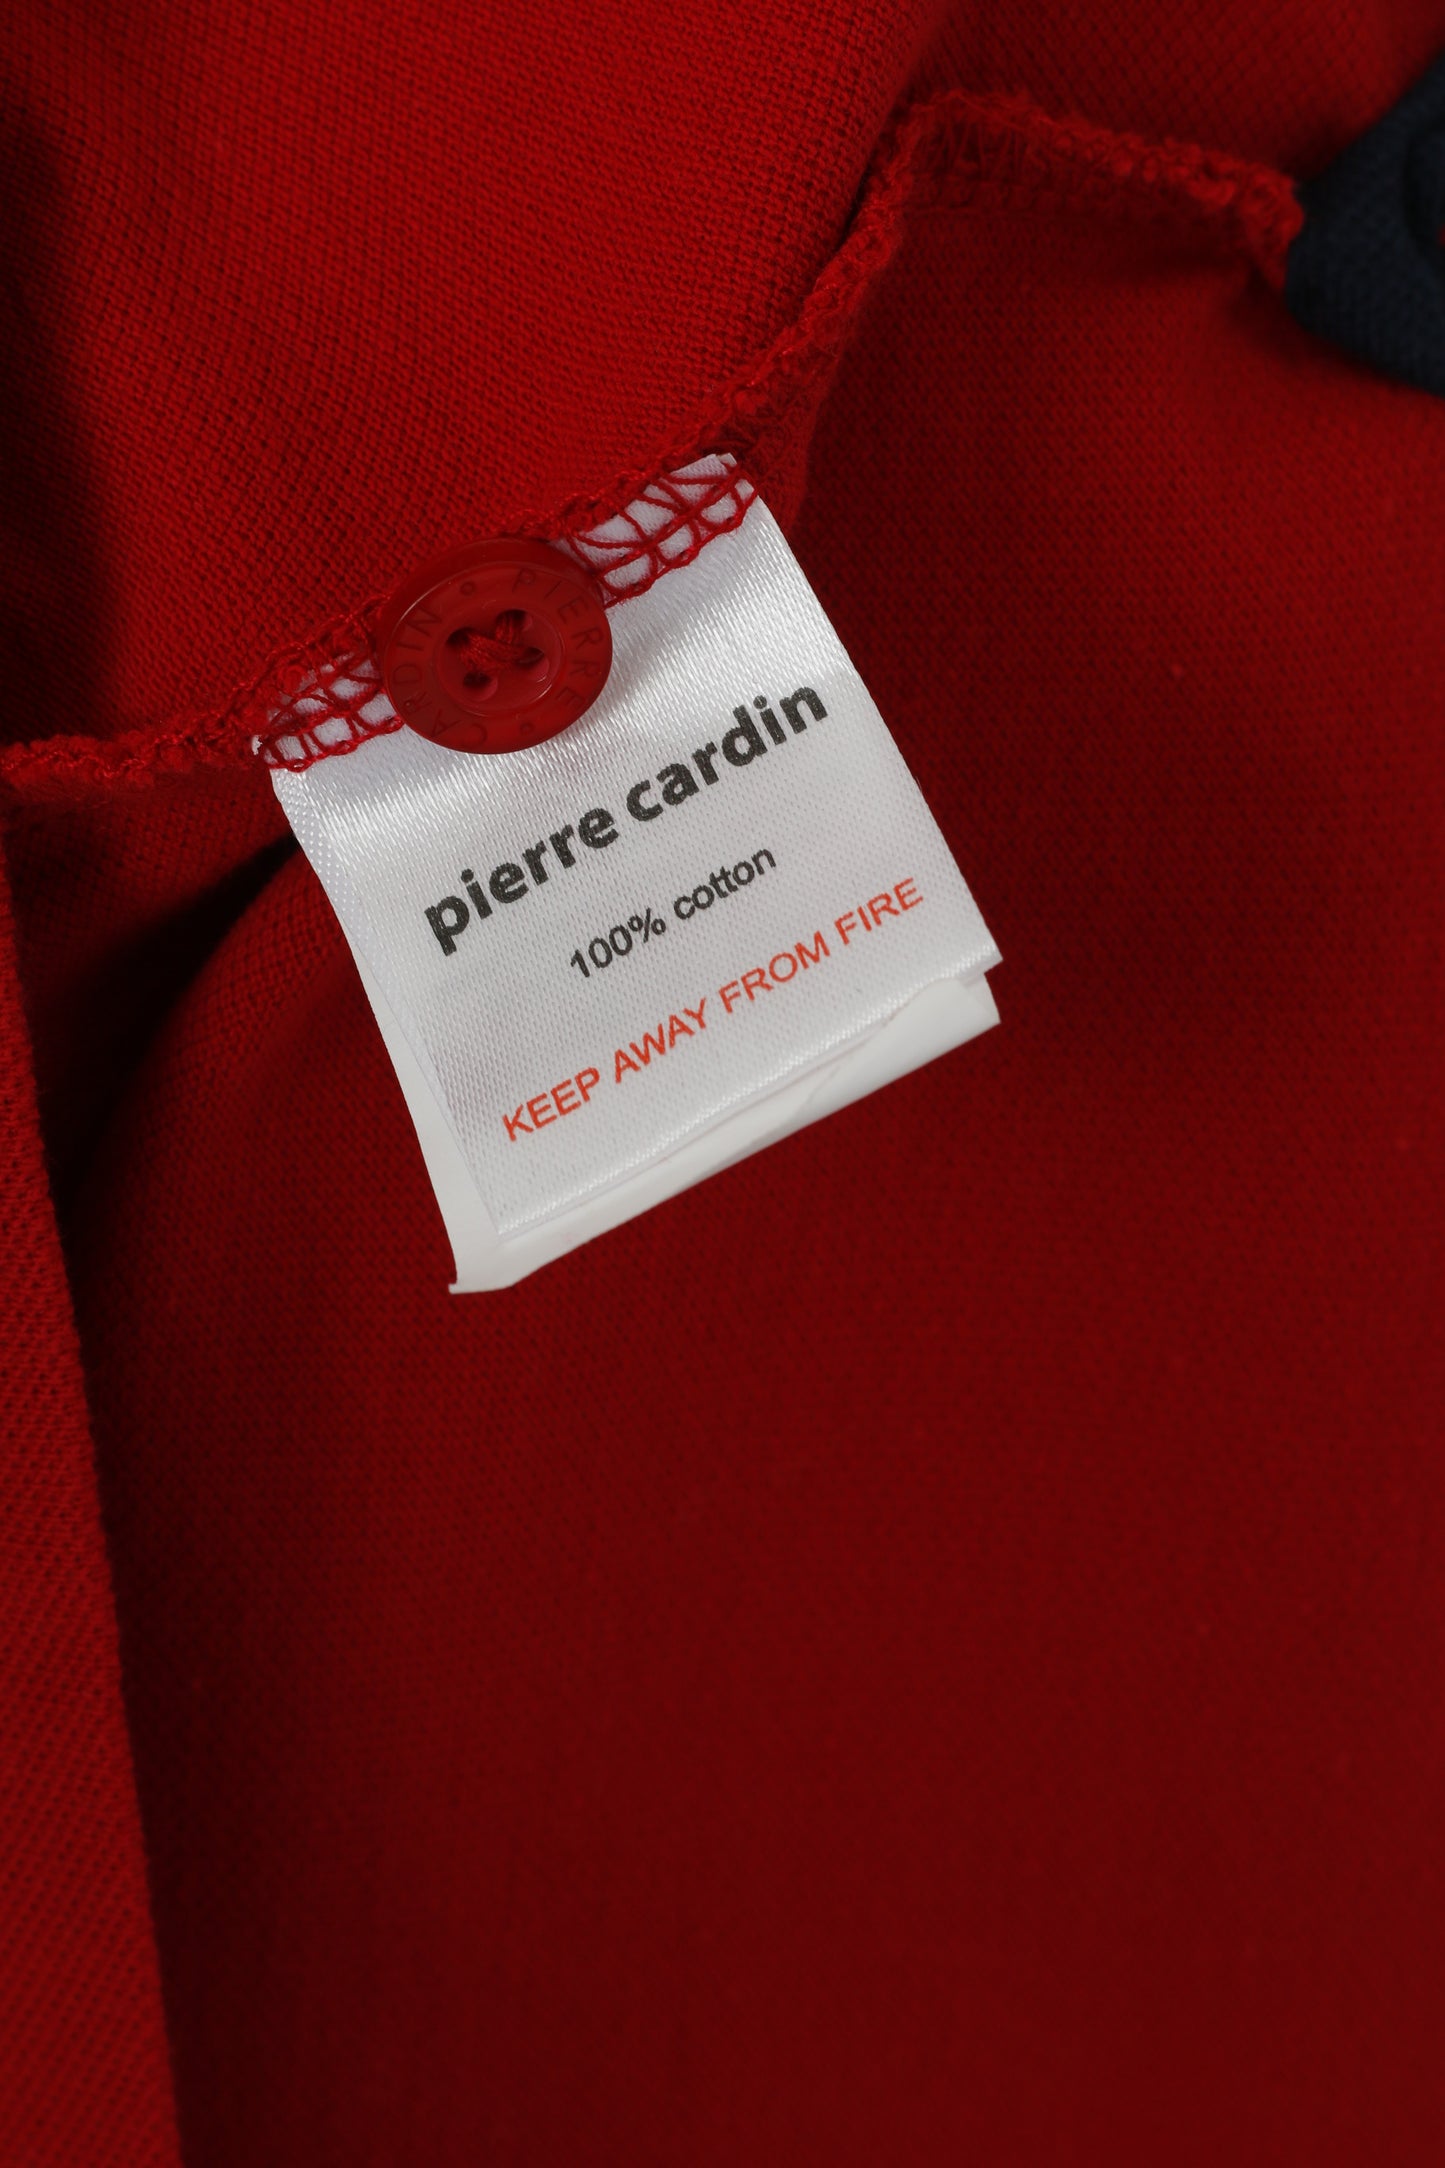 Pierre Cardin Homme L (M) Polo Rouge Coton Uni Logo Boutons Détaillés Haut Classique